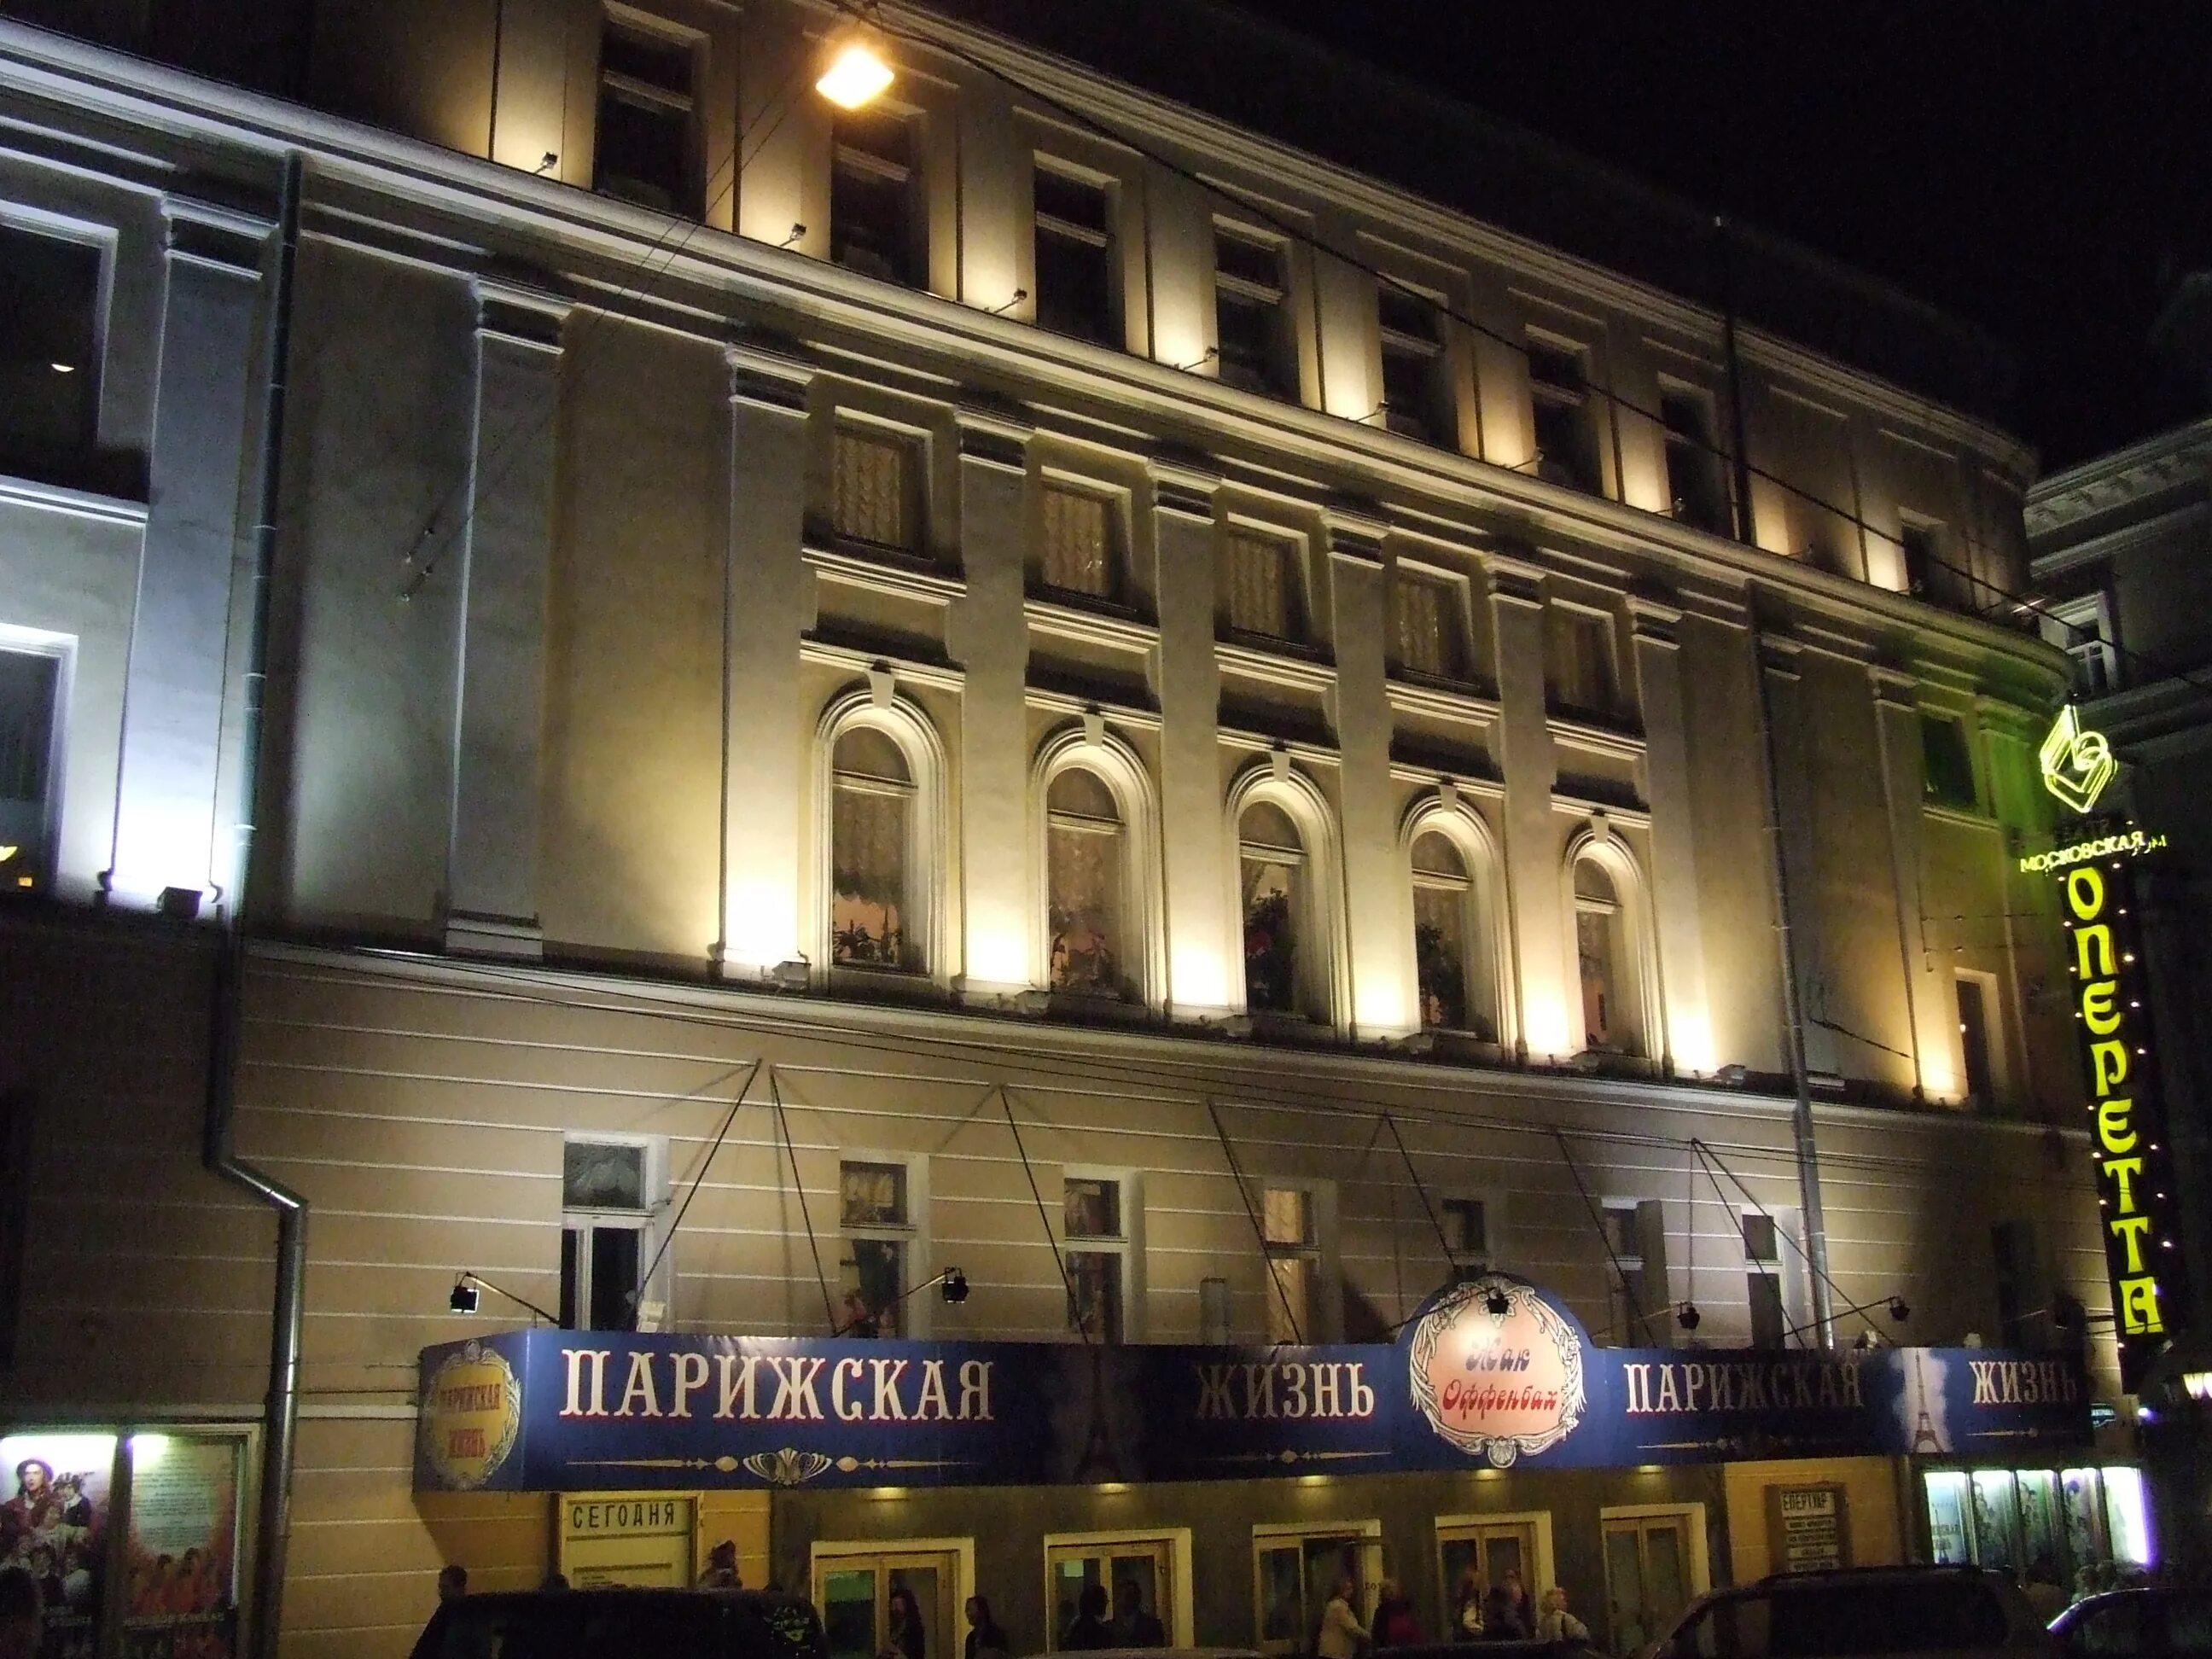 Улица большая дмитровка 6 театр